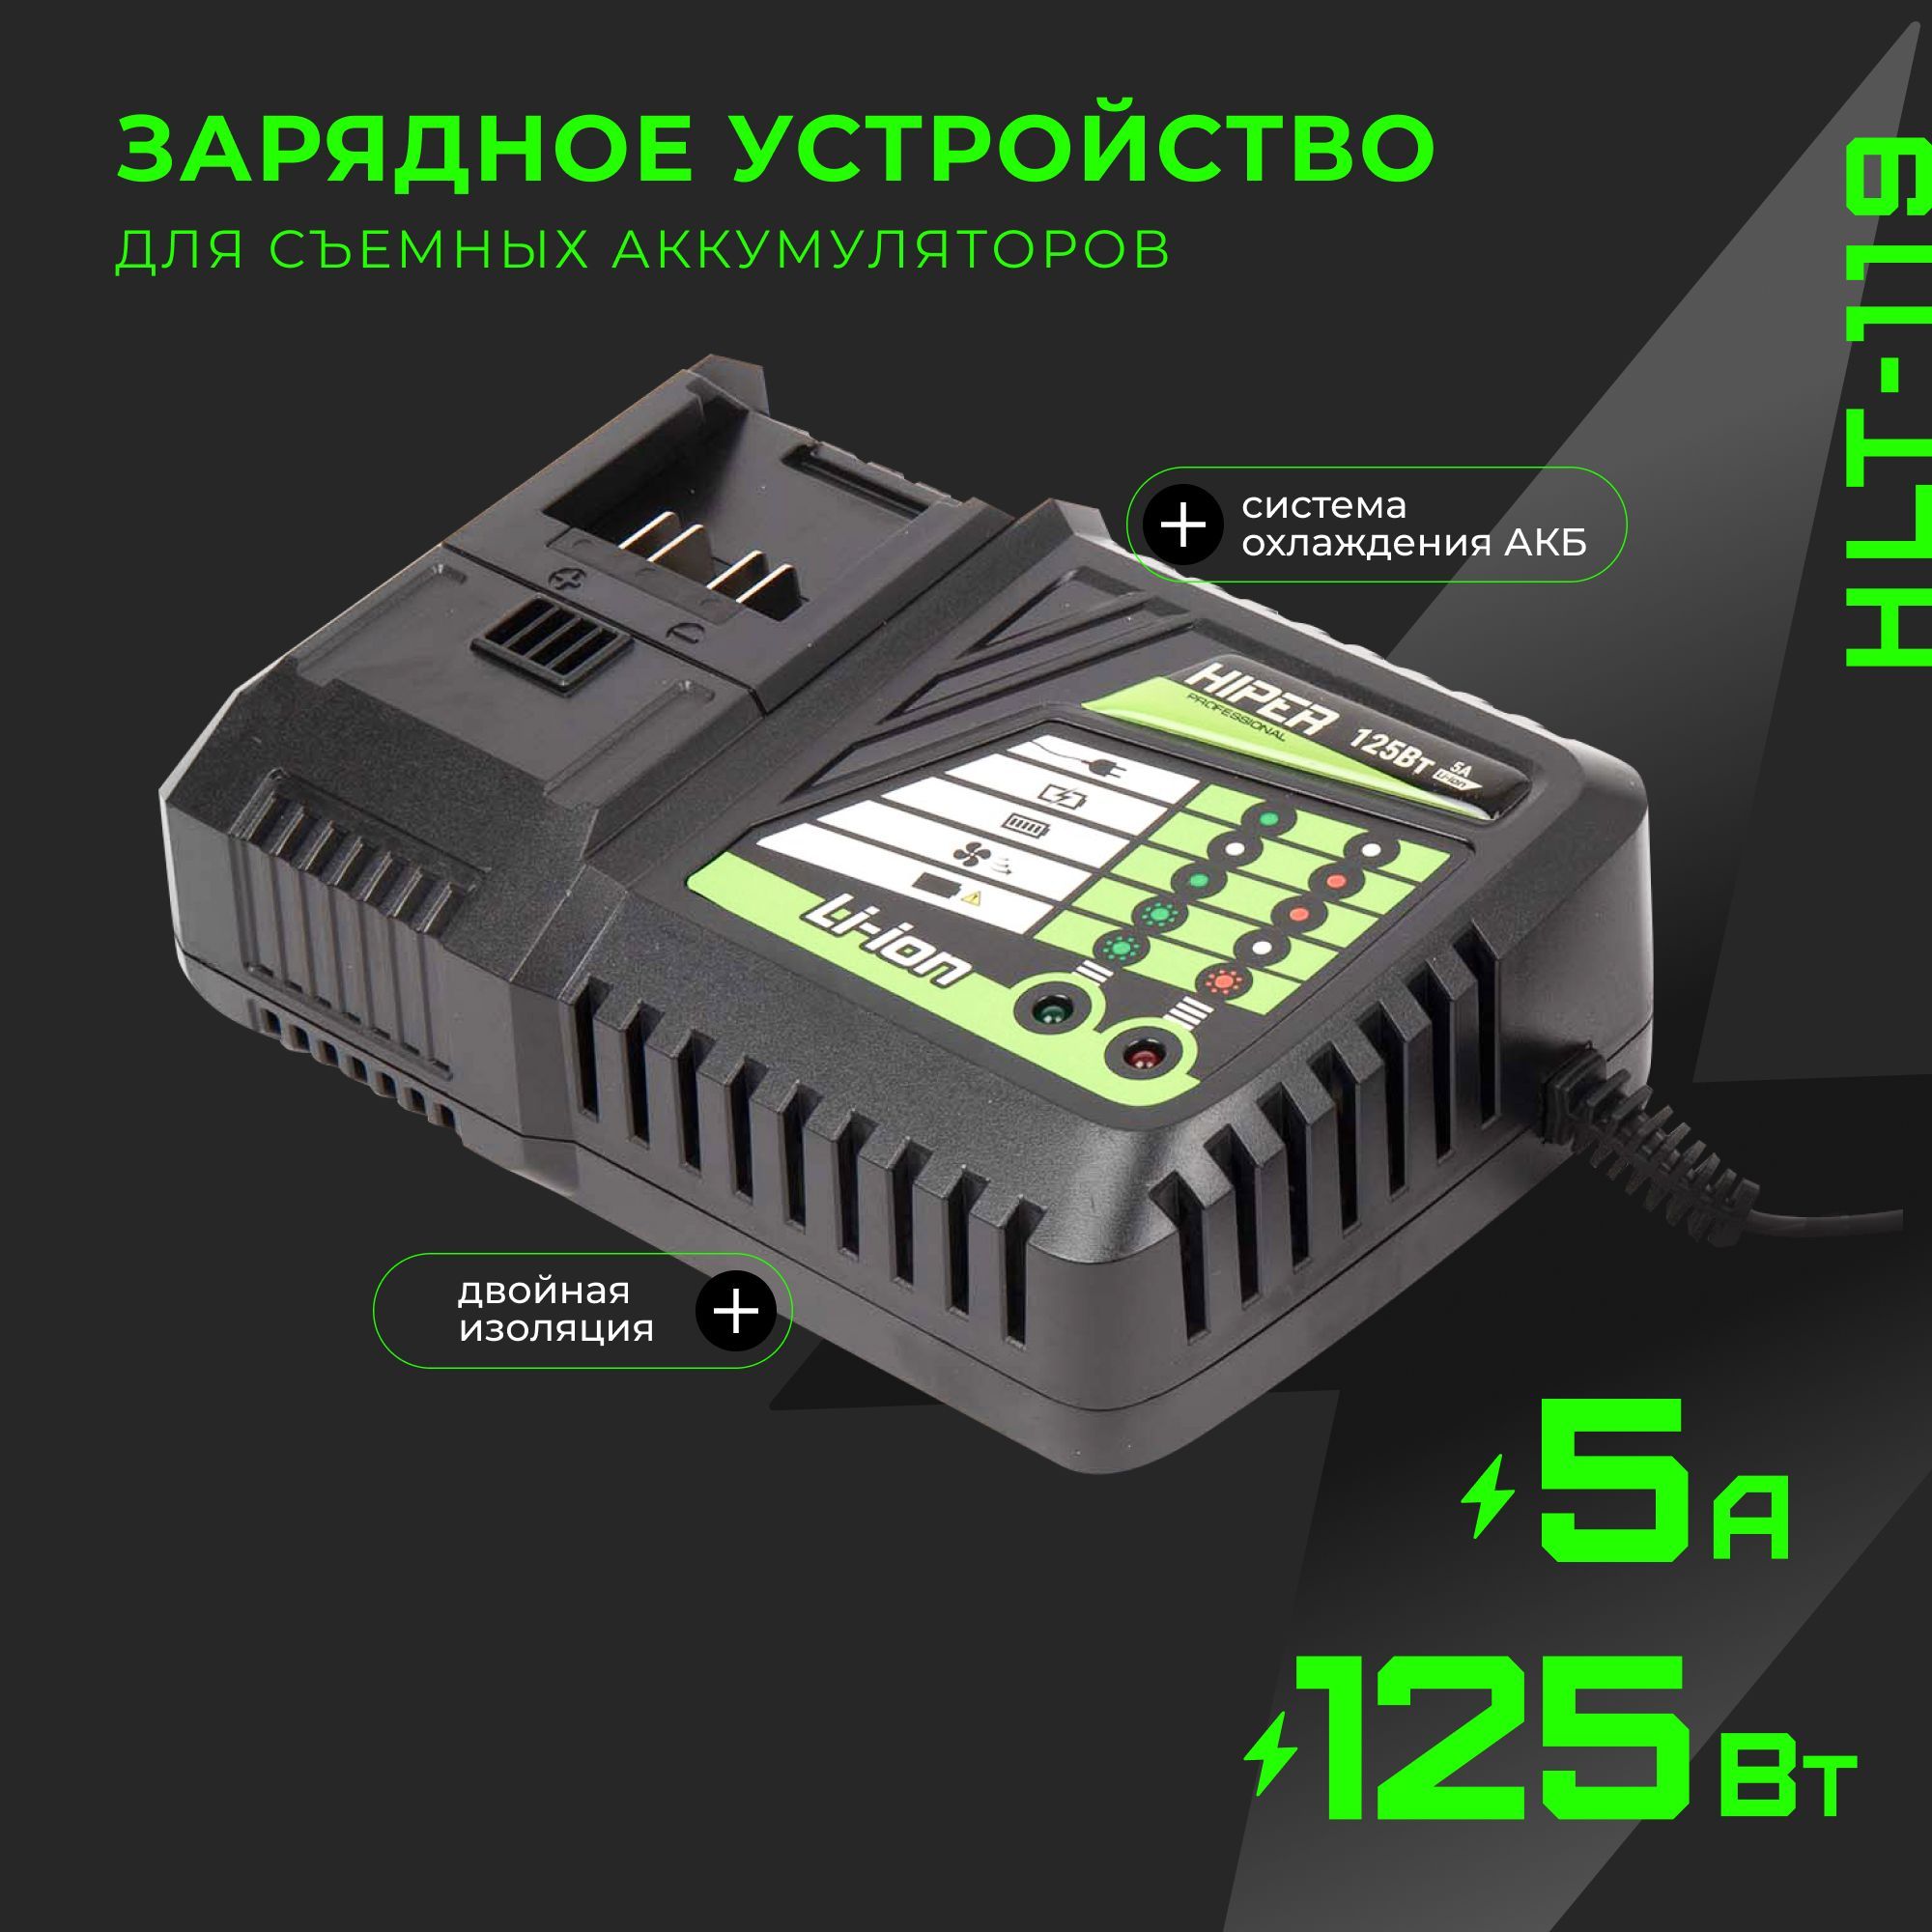 Сетевое зарядное устройство HIPER HLT-119, 125Вт, 5А, двойная изоляция, система охлаждения сетевое зарядное устройство vlp wc20 01 bk